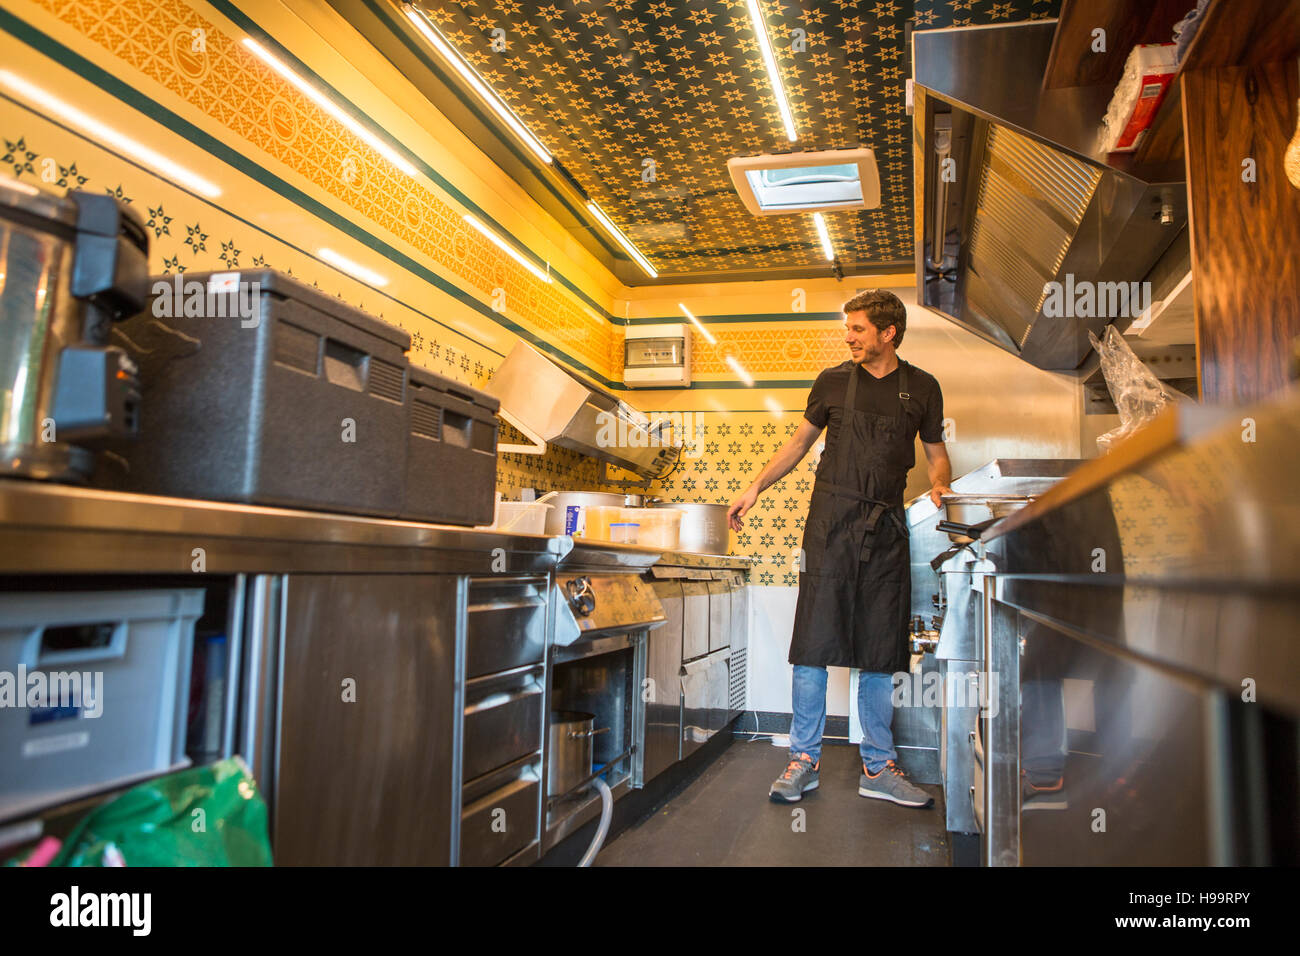 Empresario con delantal trabajando en cocina comercial en camión de alimentos Foto de stock